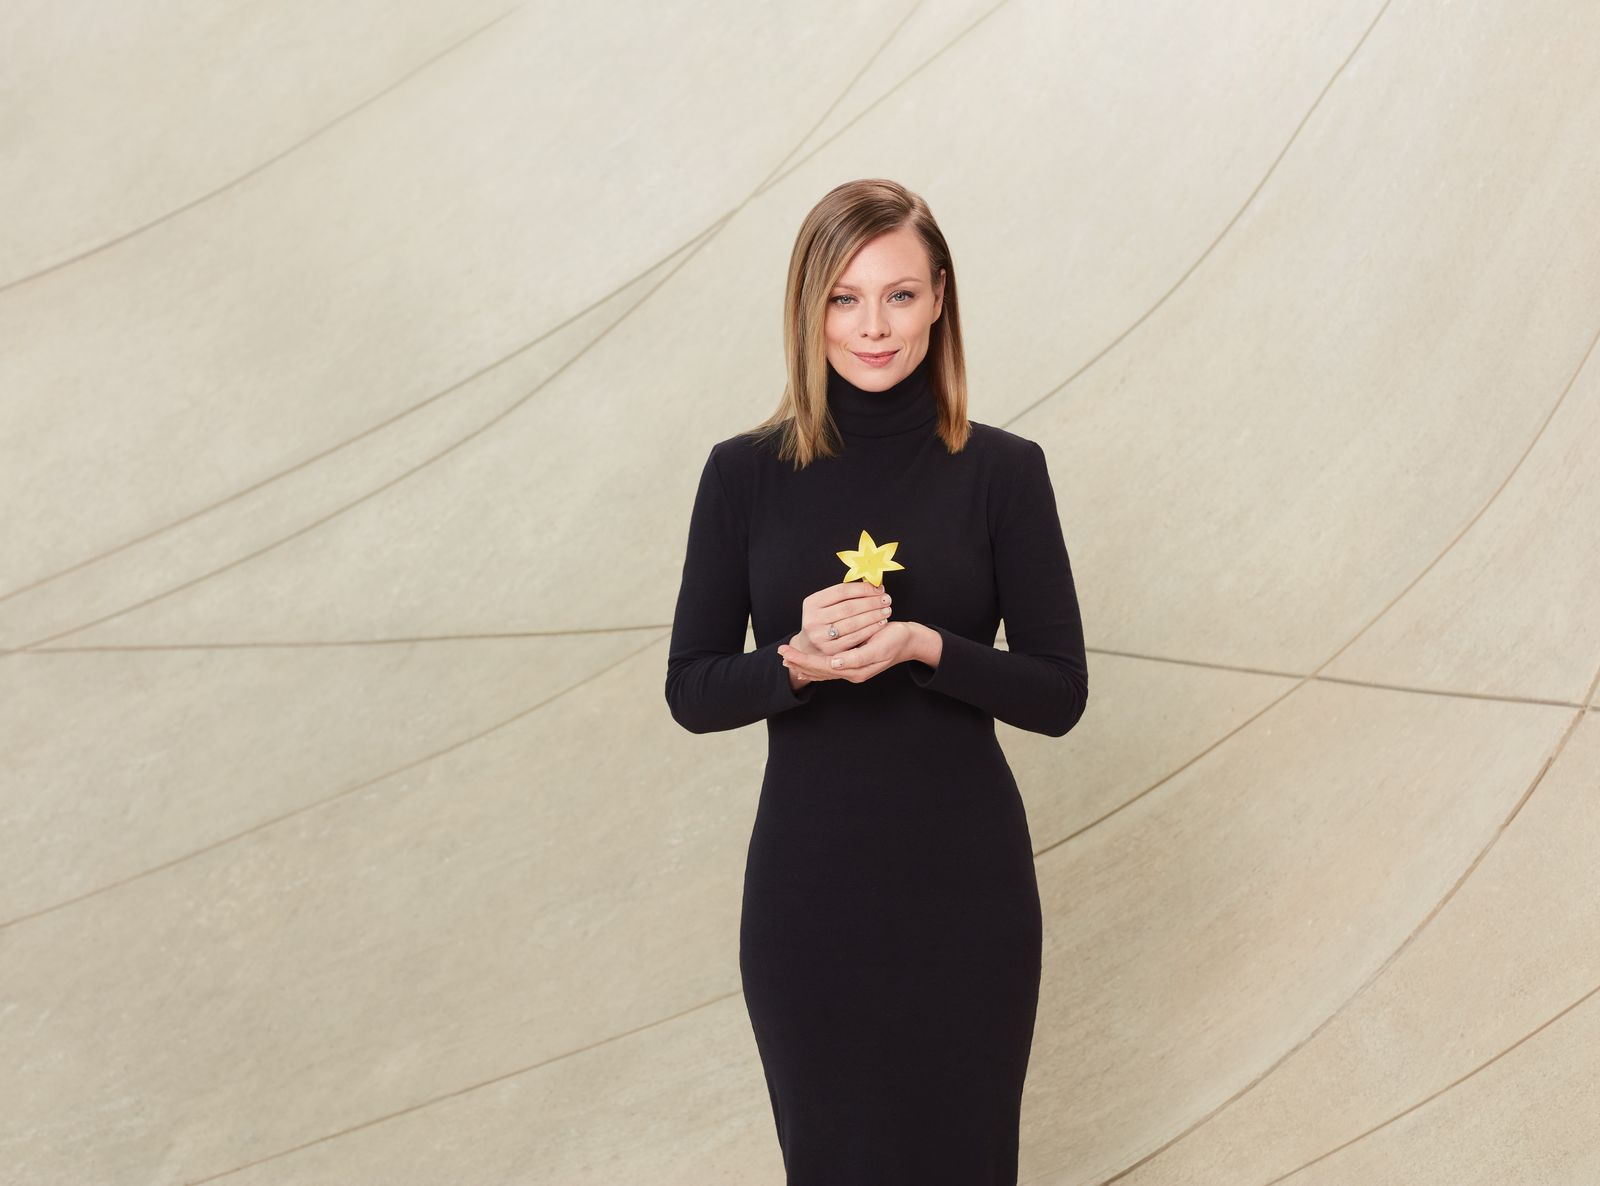 Magdalena Boczarska w czarnej sukni trzyma przed sobą w dłoni, na wysokości klatki piersiowej, żółty żonkil, symbol akcji